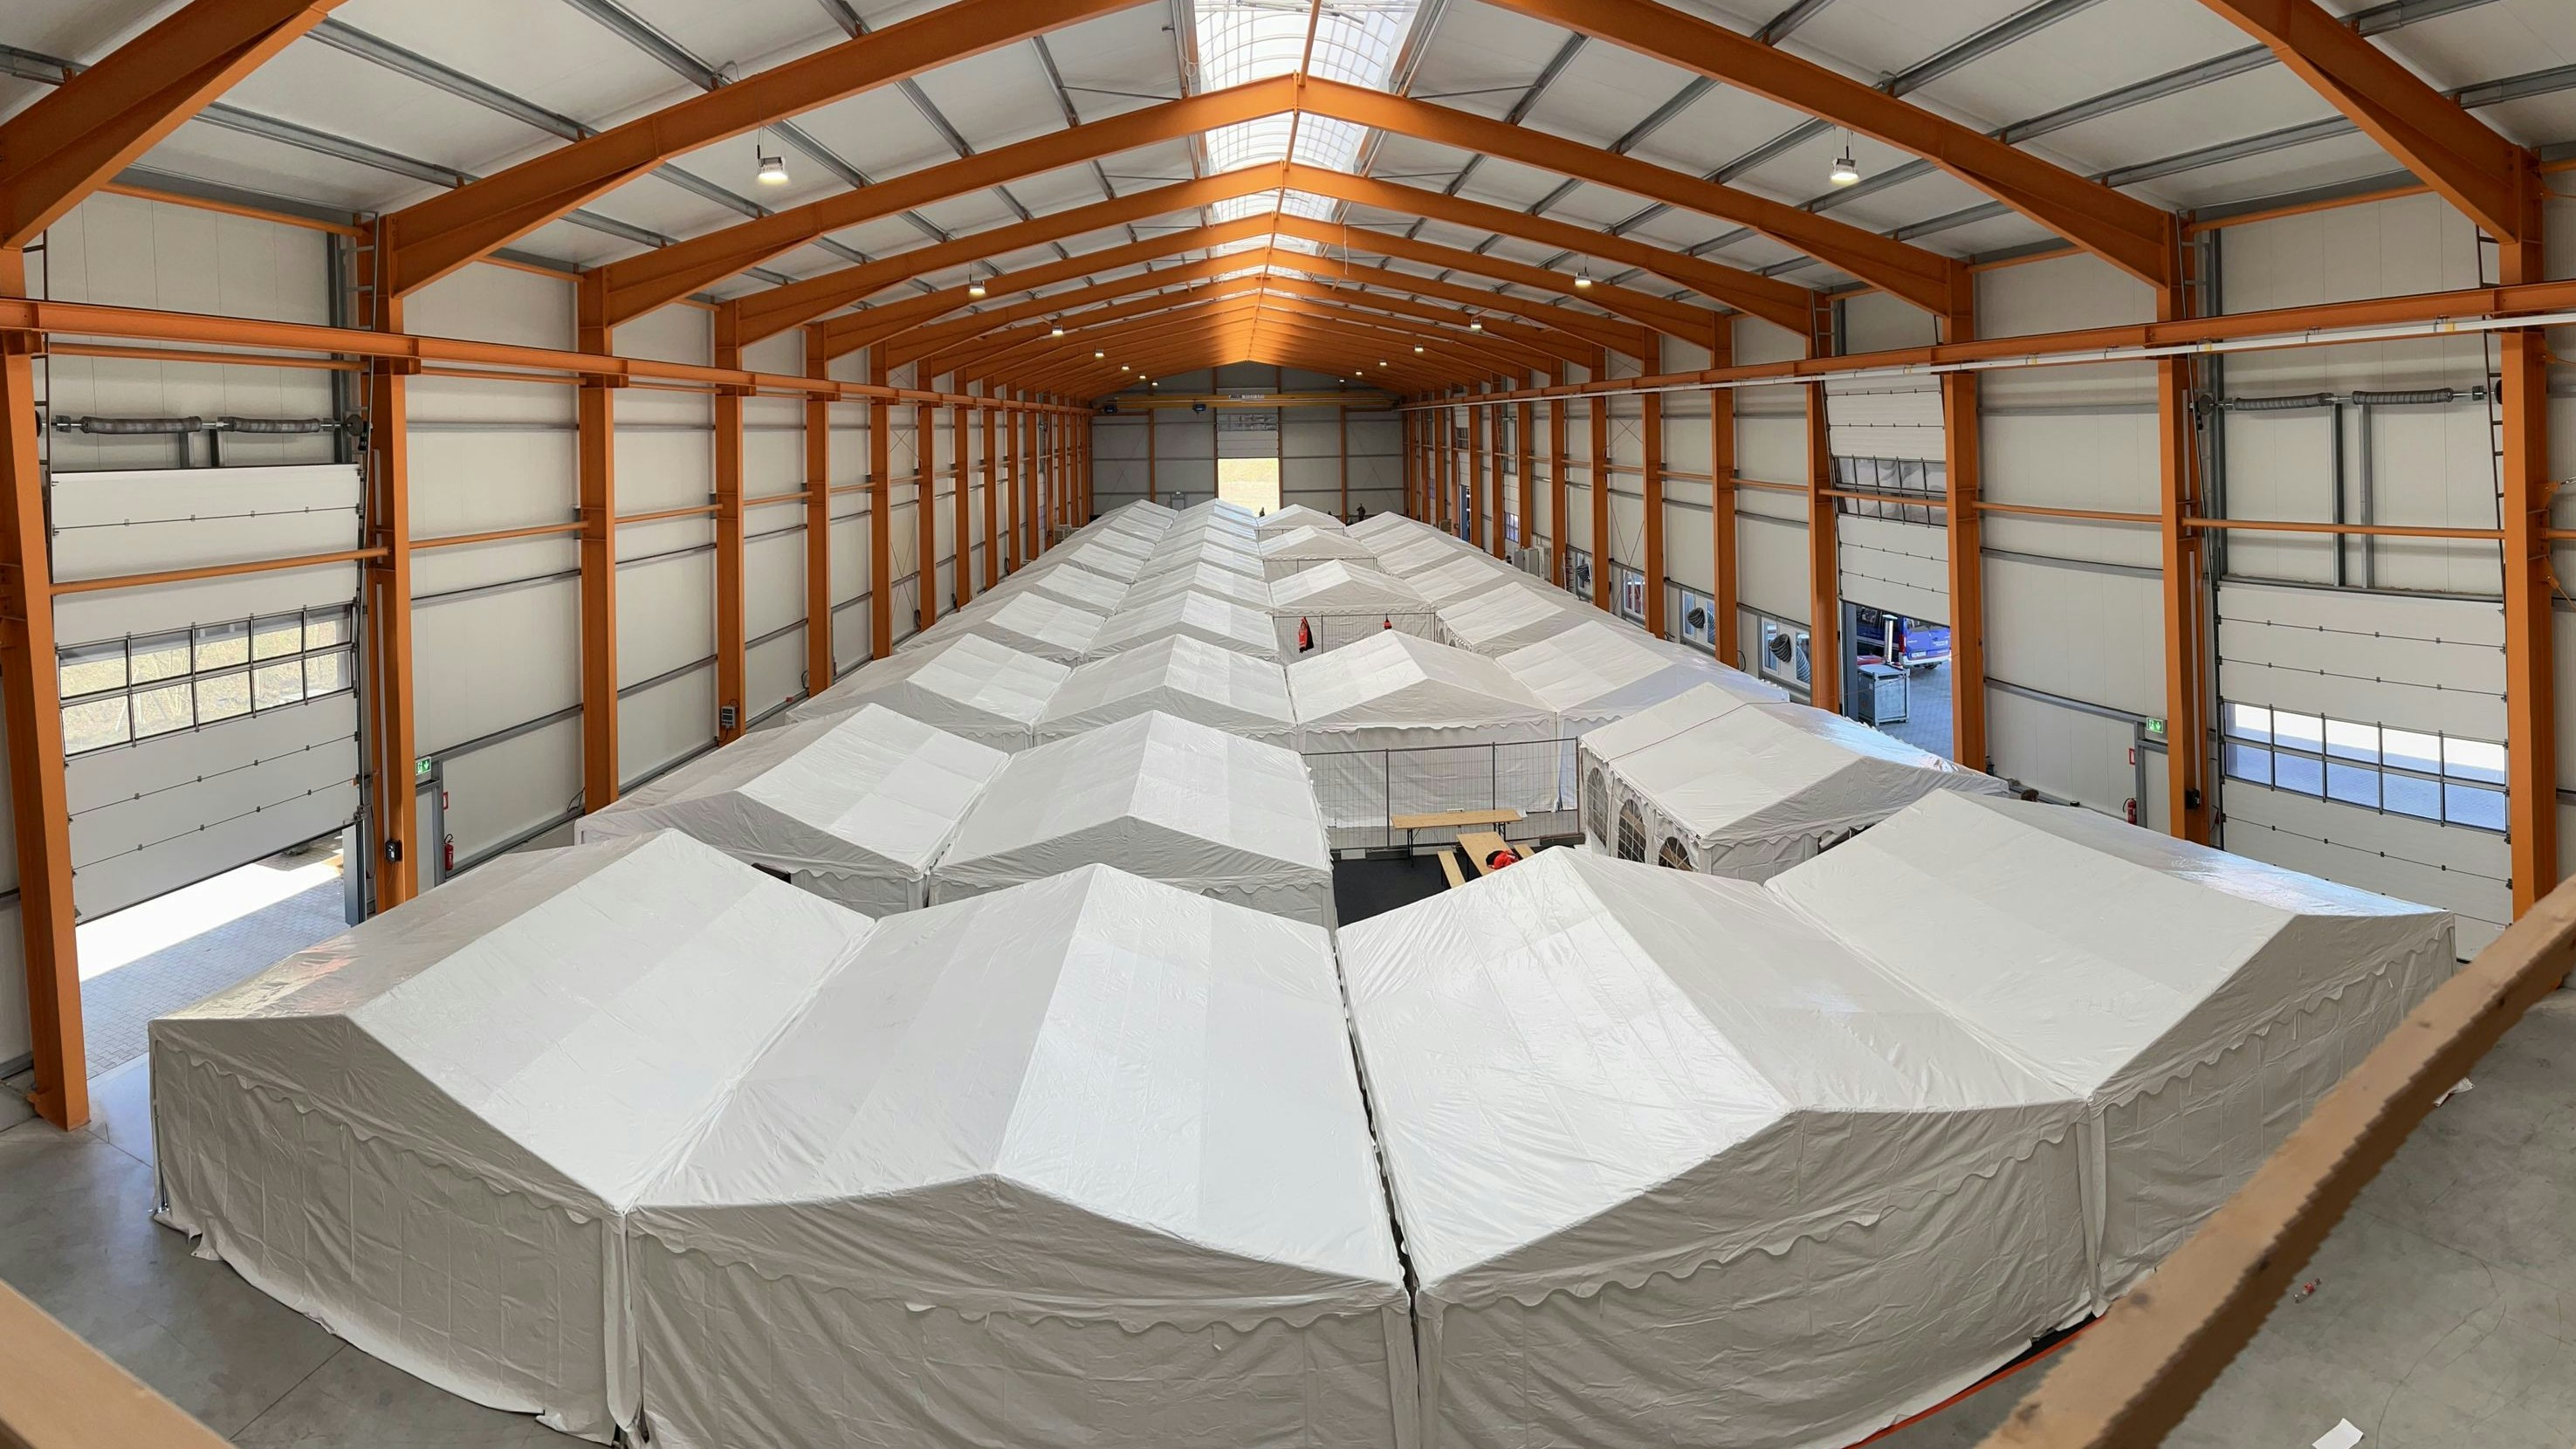 Notunterkunft: Die Einrichtung bietet Platz für 420 Menschen. Foto: DRK